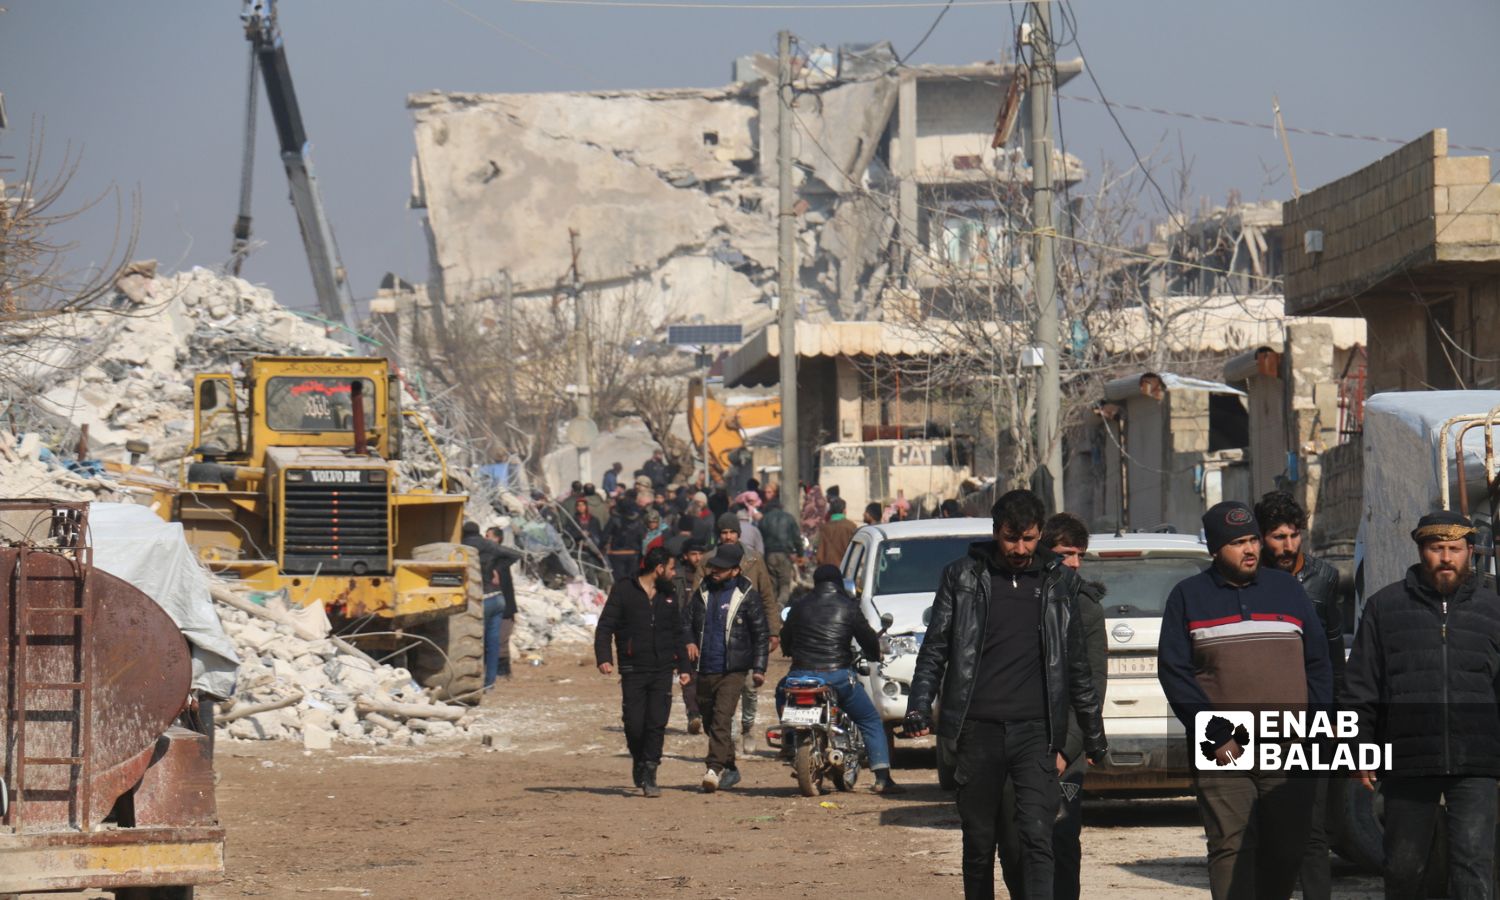 ركام وأبنية مهدّمة في بلدة جنديرس إثر زلزال ضرب مناطق شمال غربي سوريا- 8 شباط 2023 (عنب بلدي/ ديان جنباز)